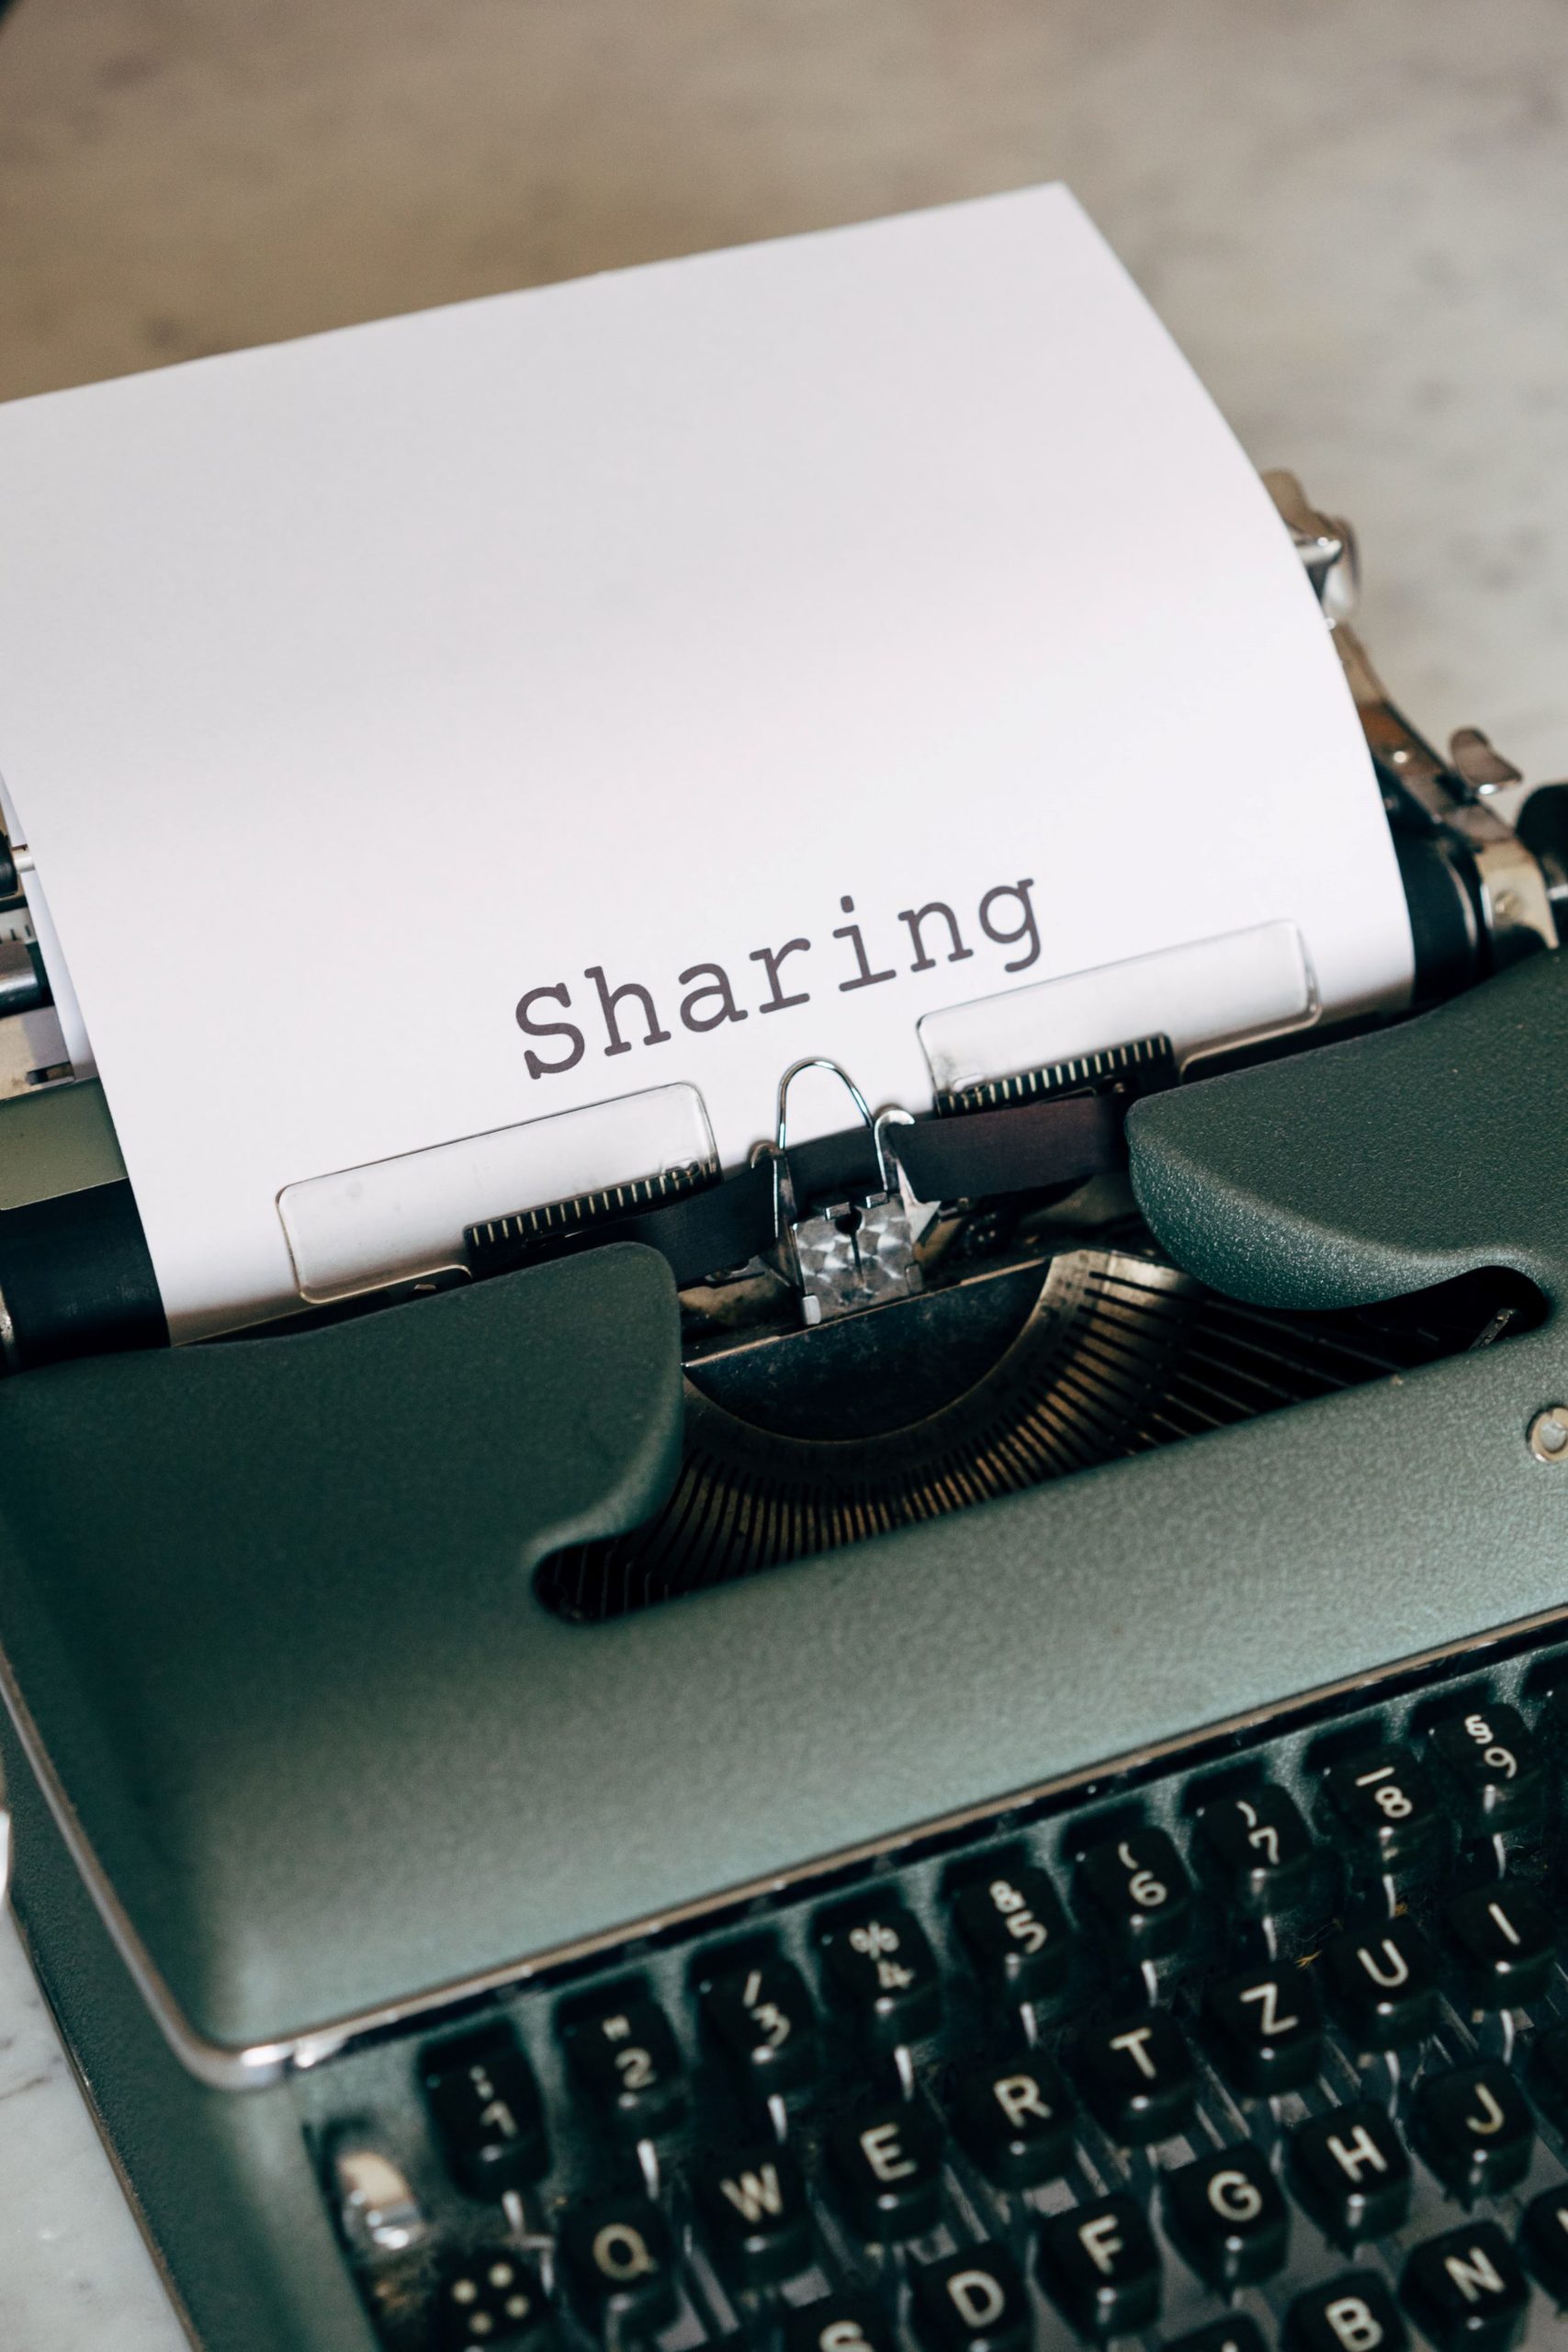 typewriter with paper that ways "sharing"